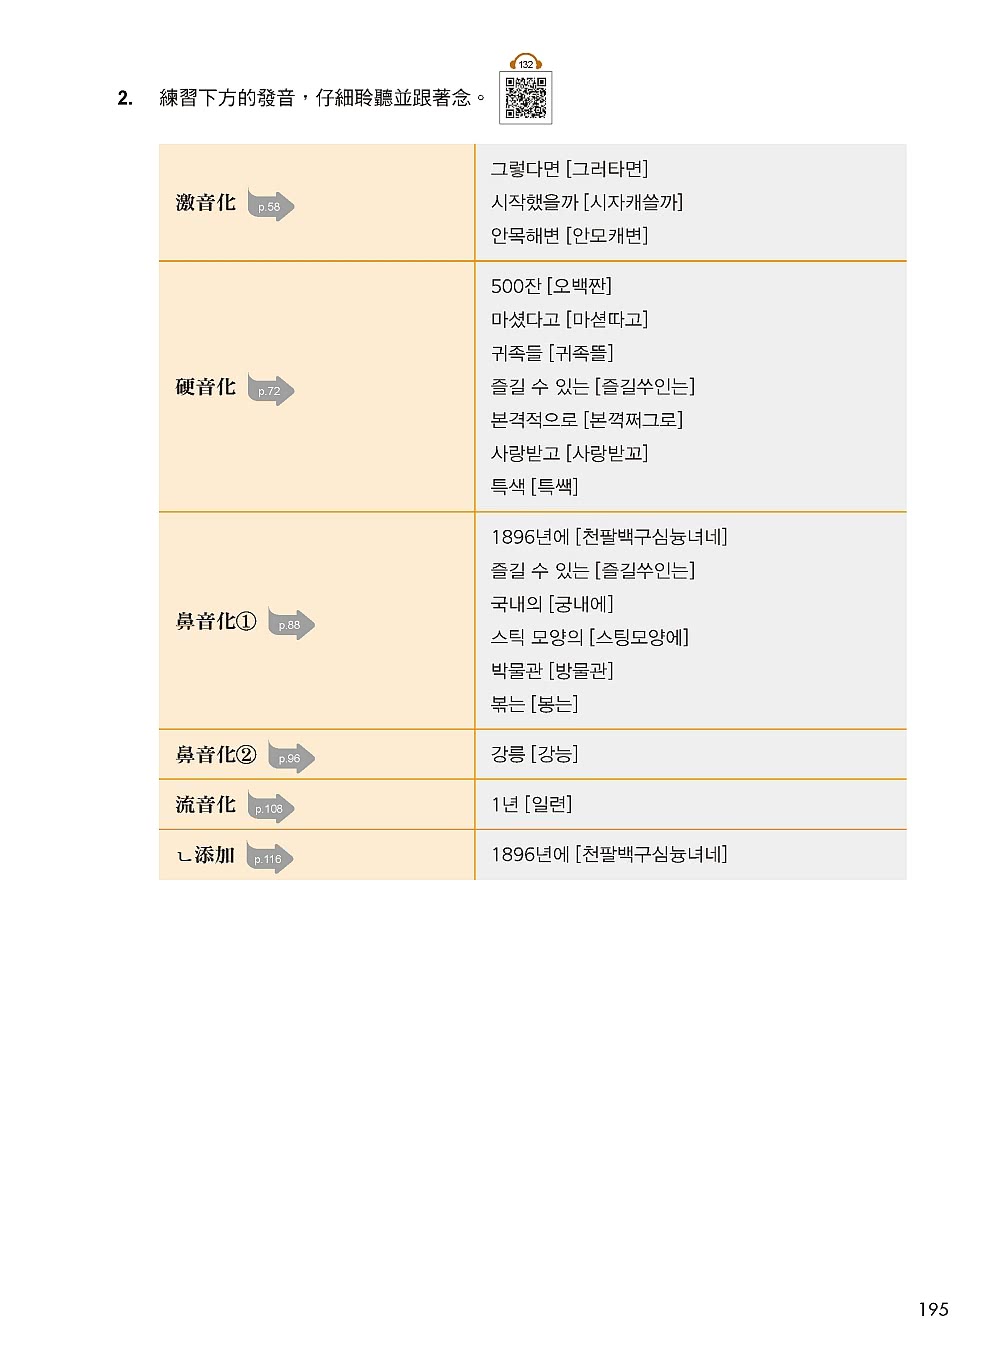 標準韓國語發音：基本發音、變音、連音、語調、語速一本搞定，讓你練就一口道地的首爾腔！